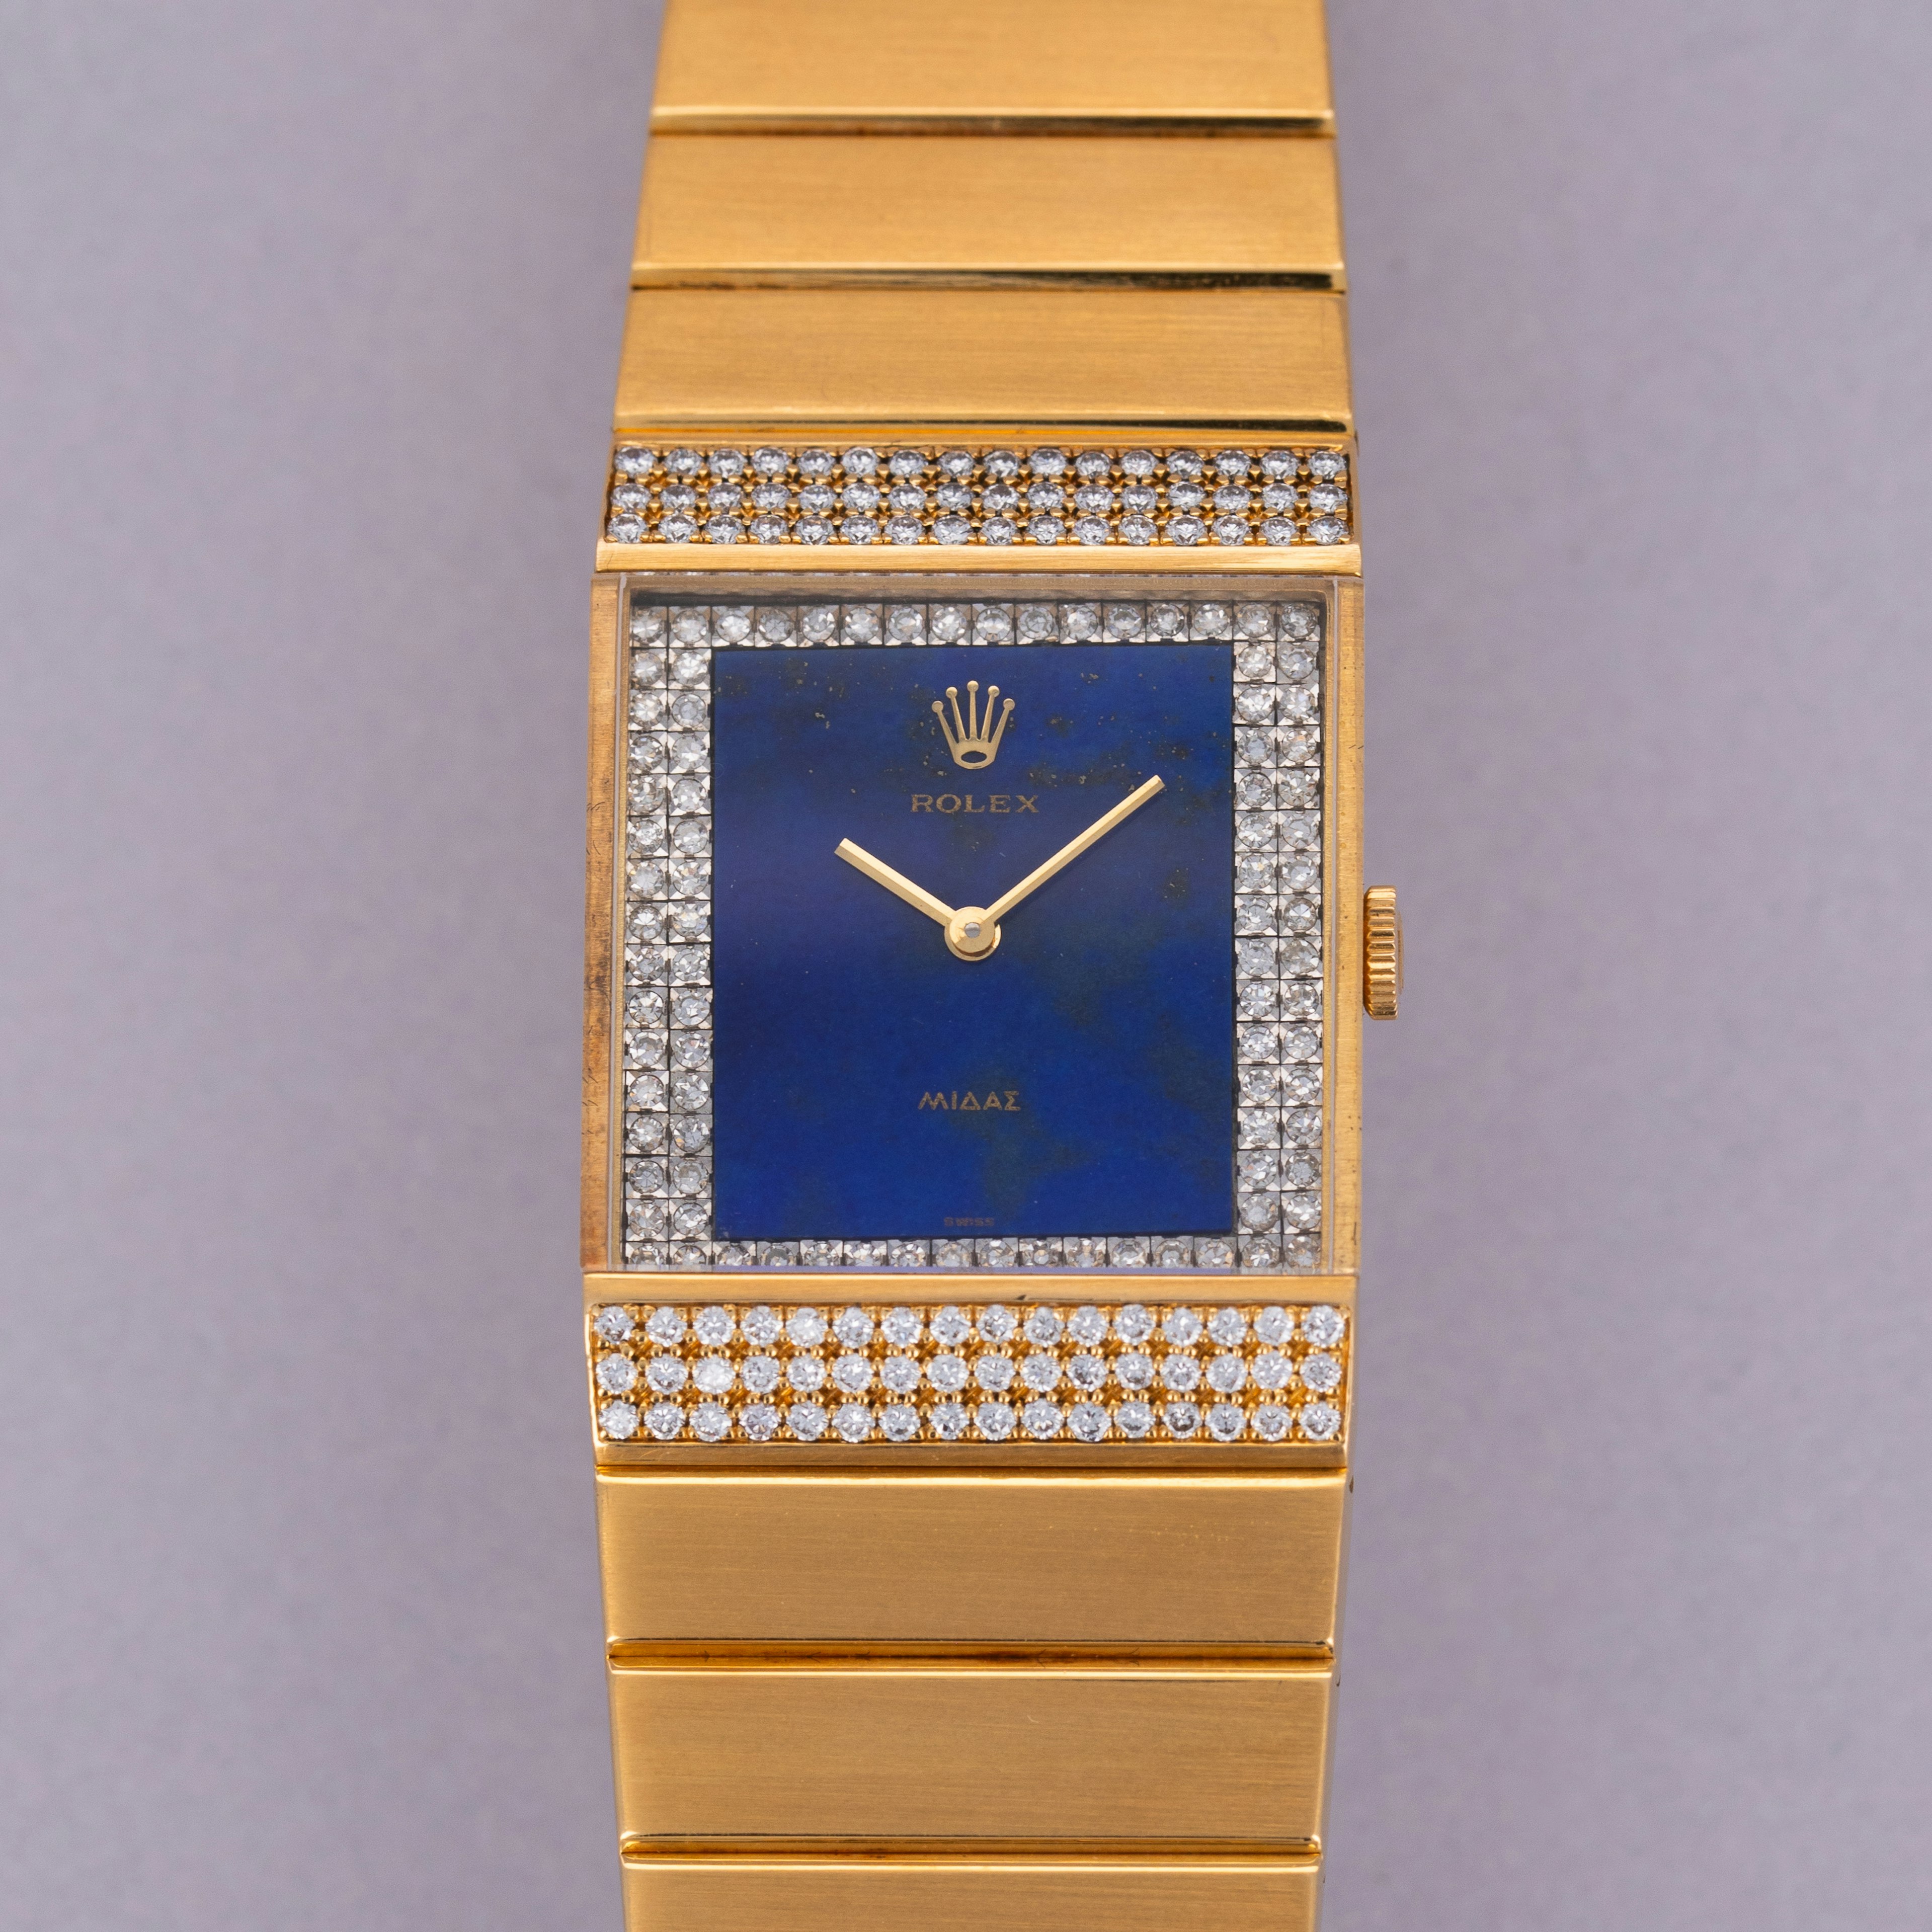 Thumbnail for Rolex King Midas 4611 Diamond Lapis Lazuli Dial 18k YG